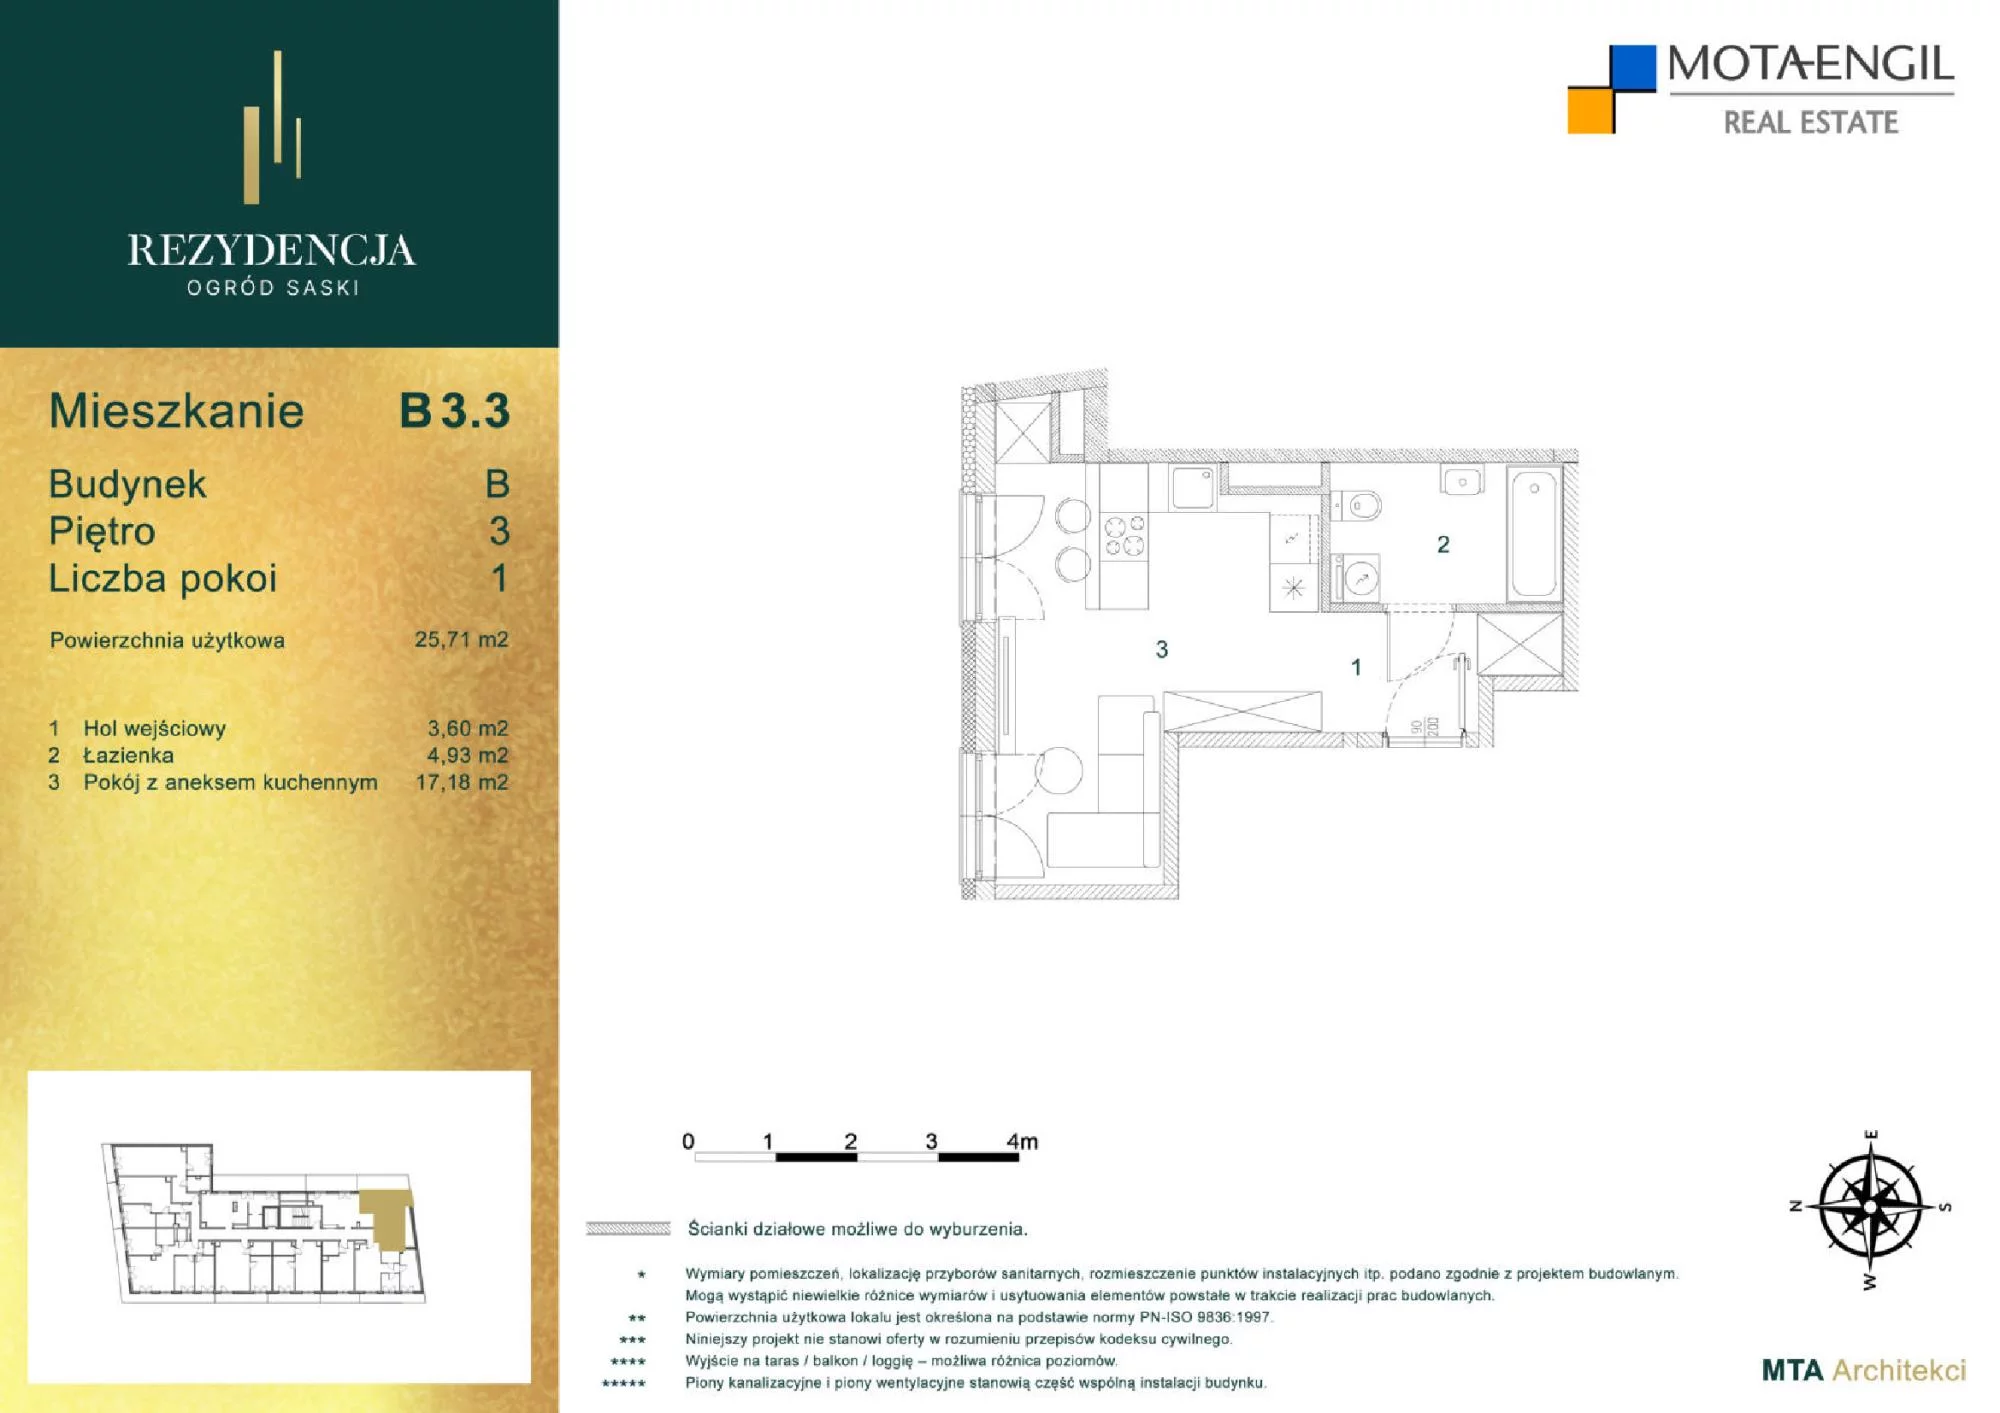 Mieszkanie 25,71 m², piętro 3, oferta nr B3.3, Rezydencja Ogród Saski, Lublin, Wieniawa, ul. Jasna 7, 7A